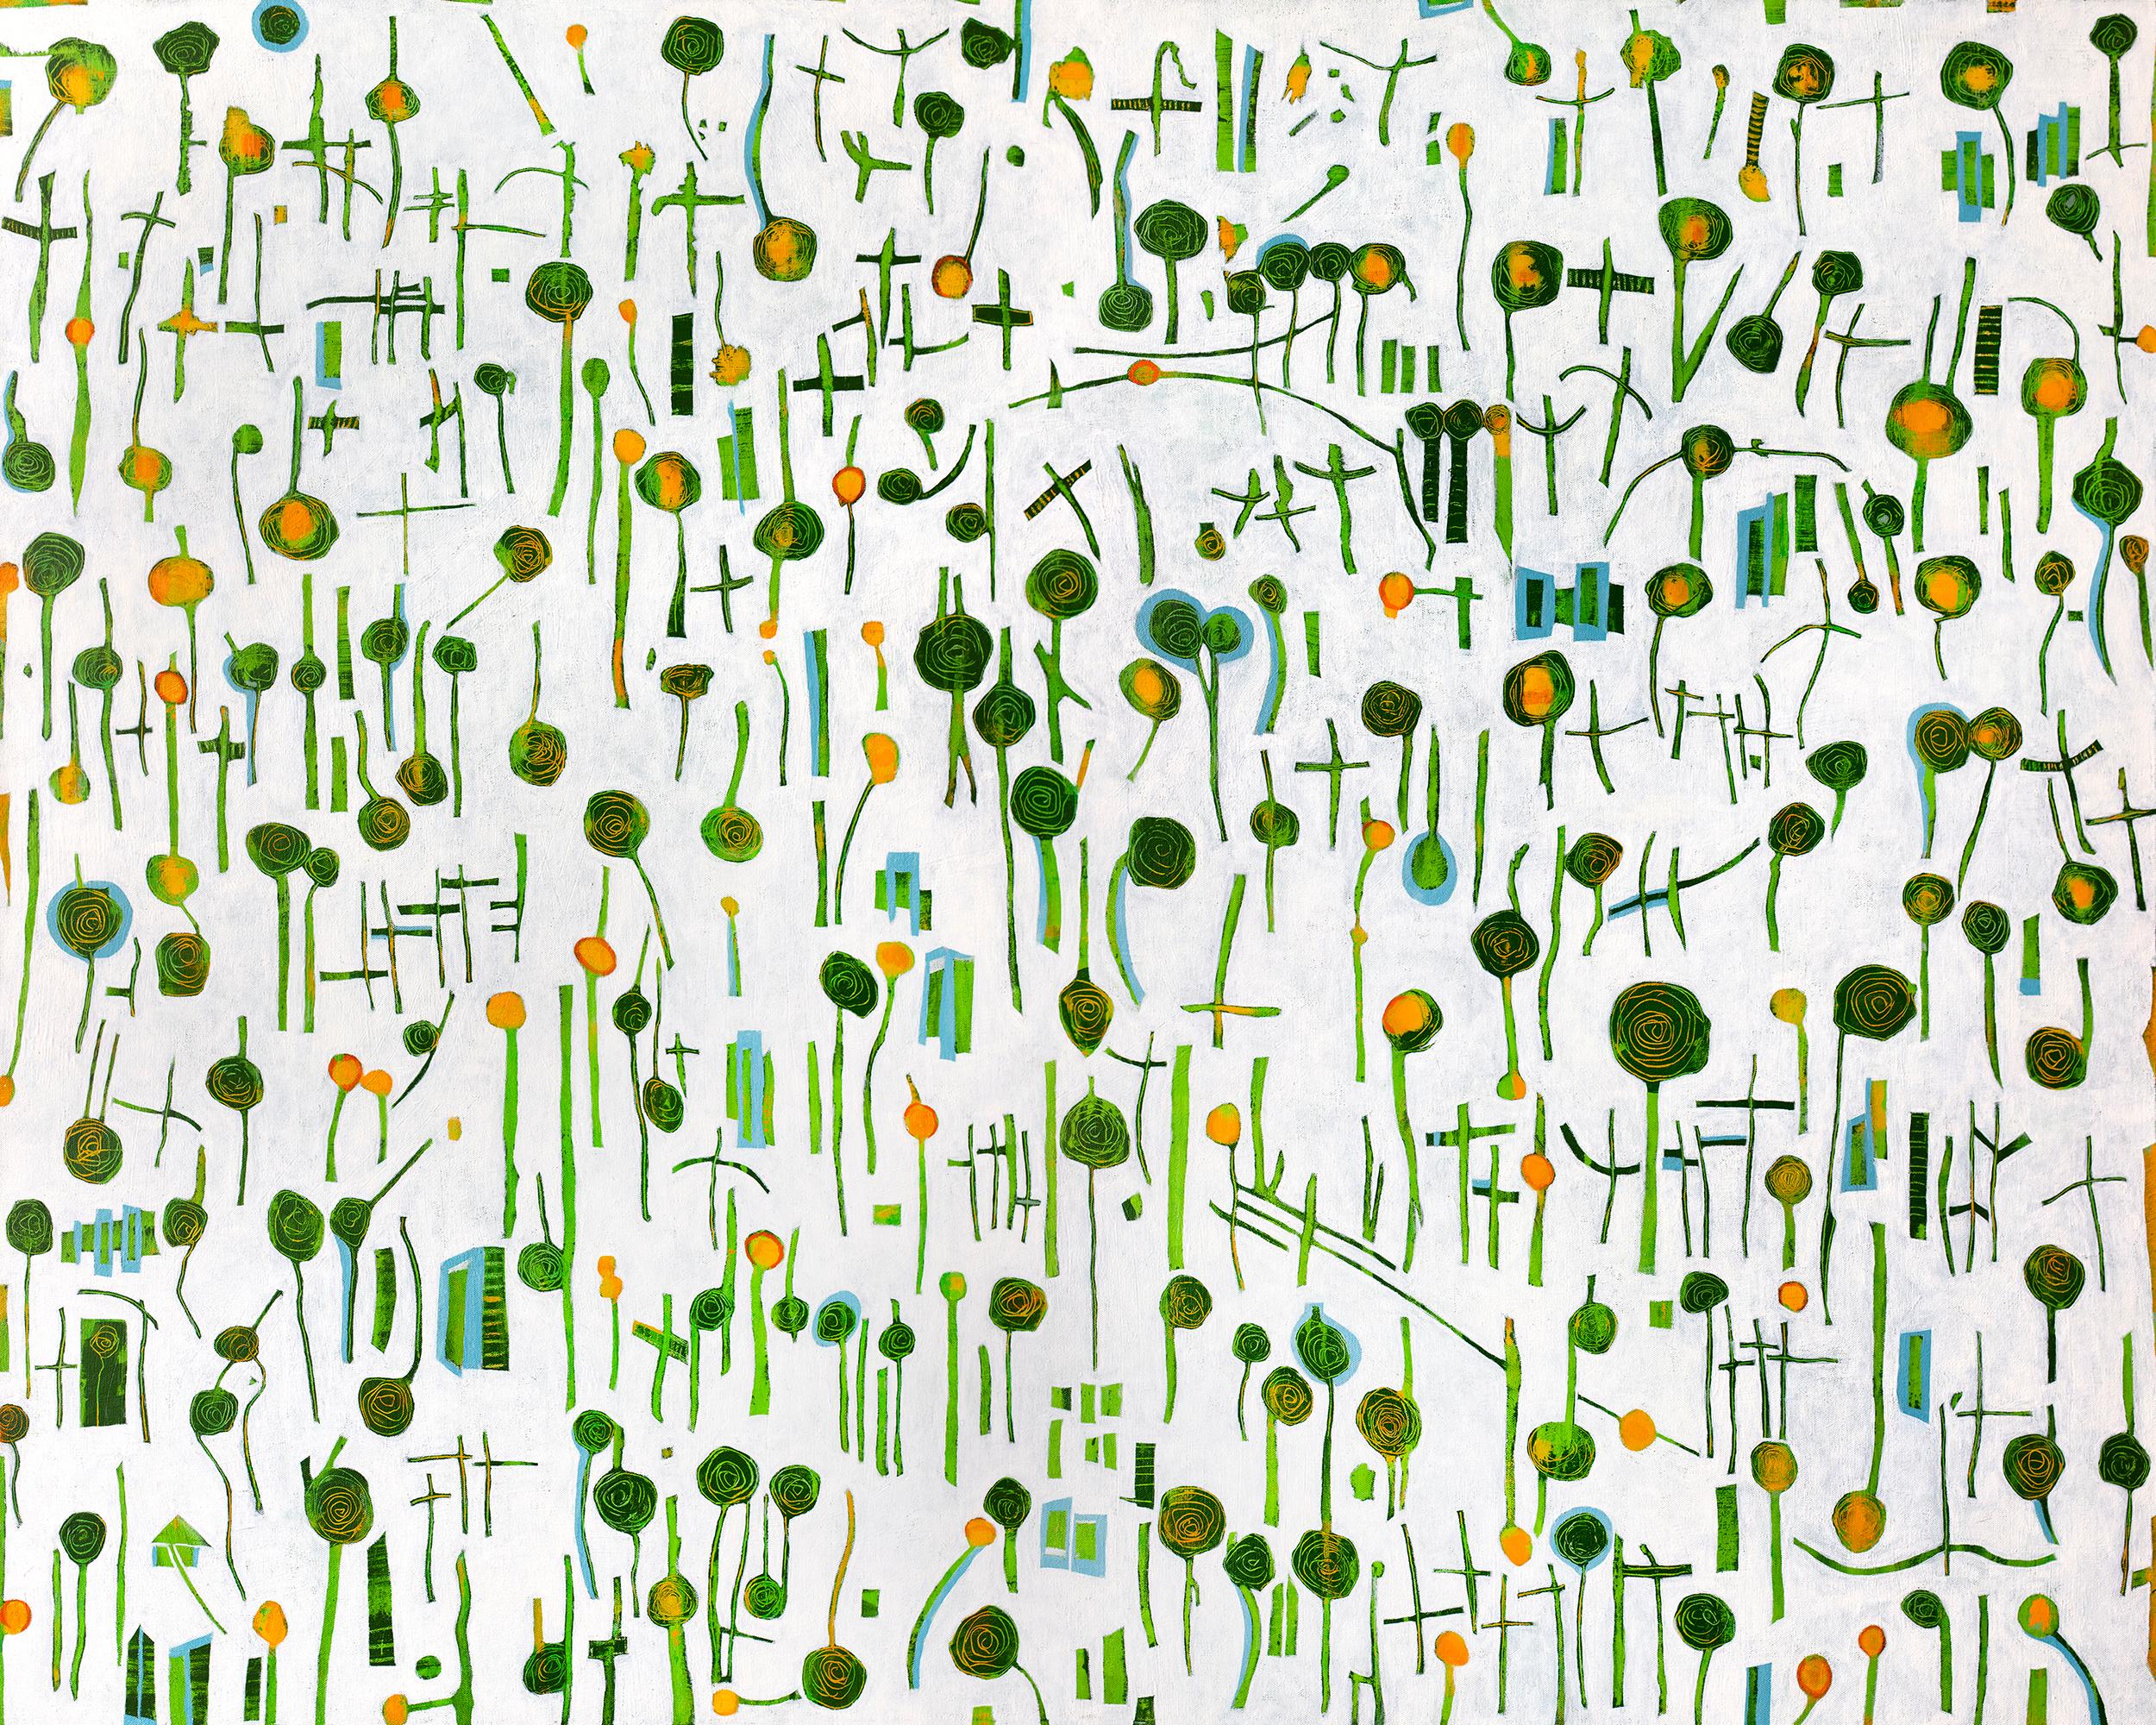 Abstract Print Sofie Swann - "Lollipops #2" Impression giclée en édition limitée, 36" x 45"